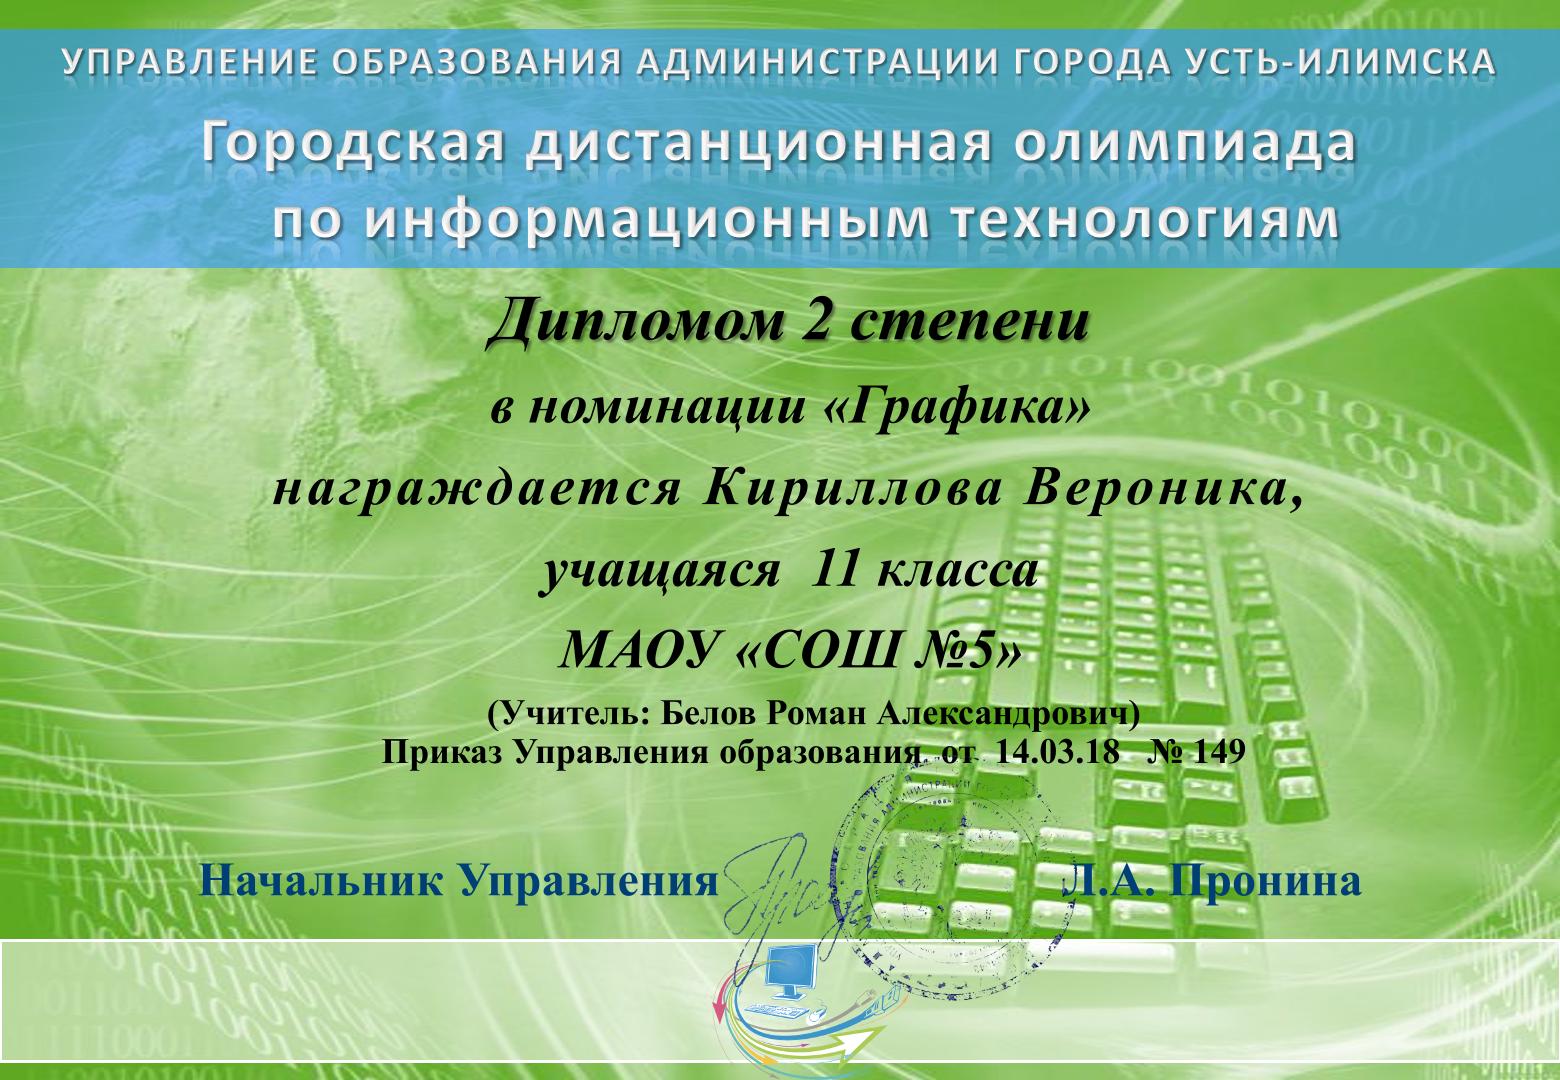 Городская олимпиада по информационным технологиям, г. Усть-Илимск - ДИПЛОМ II СТЕПЕНИ